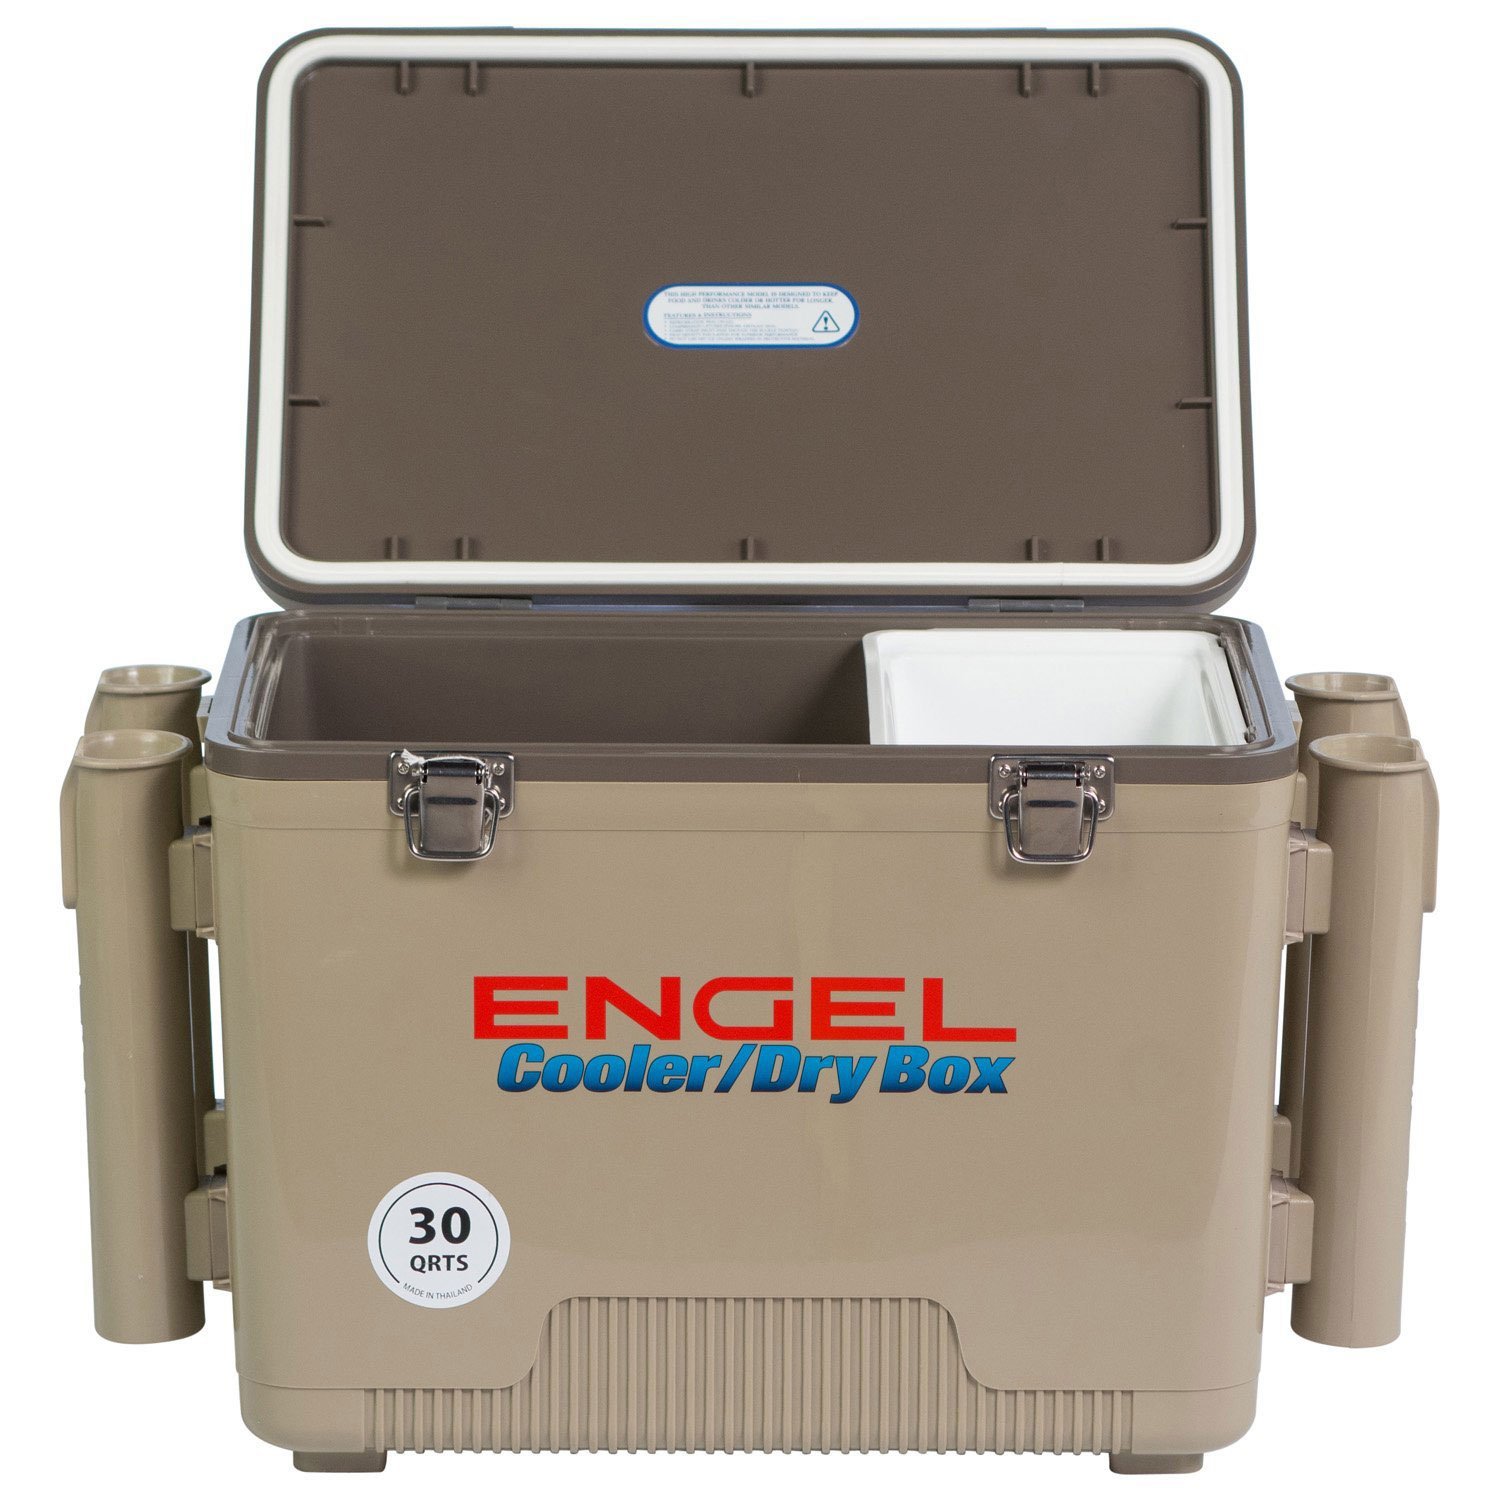 Engel Cooler/Dry Box